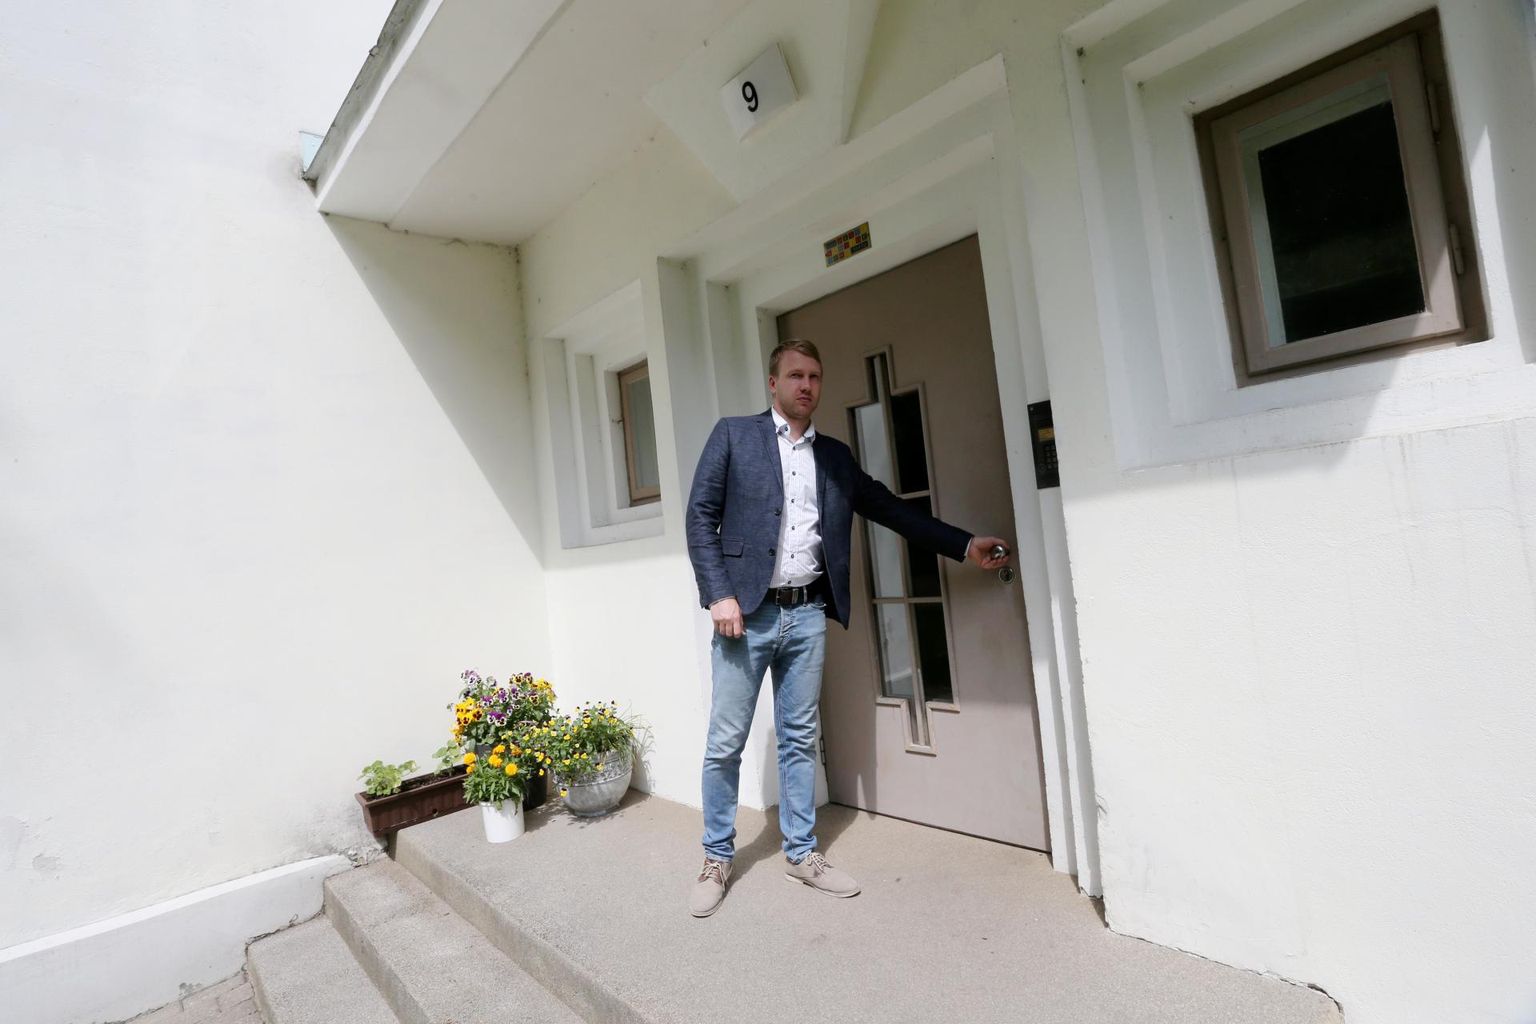 Kinnisvaramaakler Ranno Kalda näitas eile Tähtveres maja, kus asub eksklusiivne korter, mille üürihind enne kinnisvarakriisi oli 750 eurot. See, et ta praegustes oludes selle 700 euroga üürile anda sai, on tema enda sõnul hea tulemus.